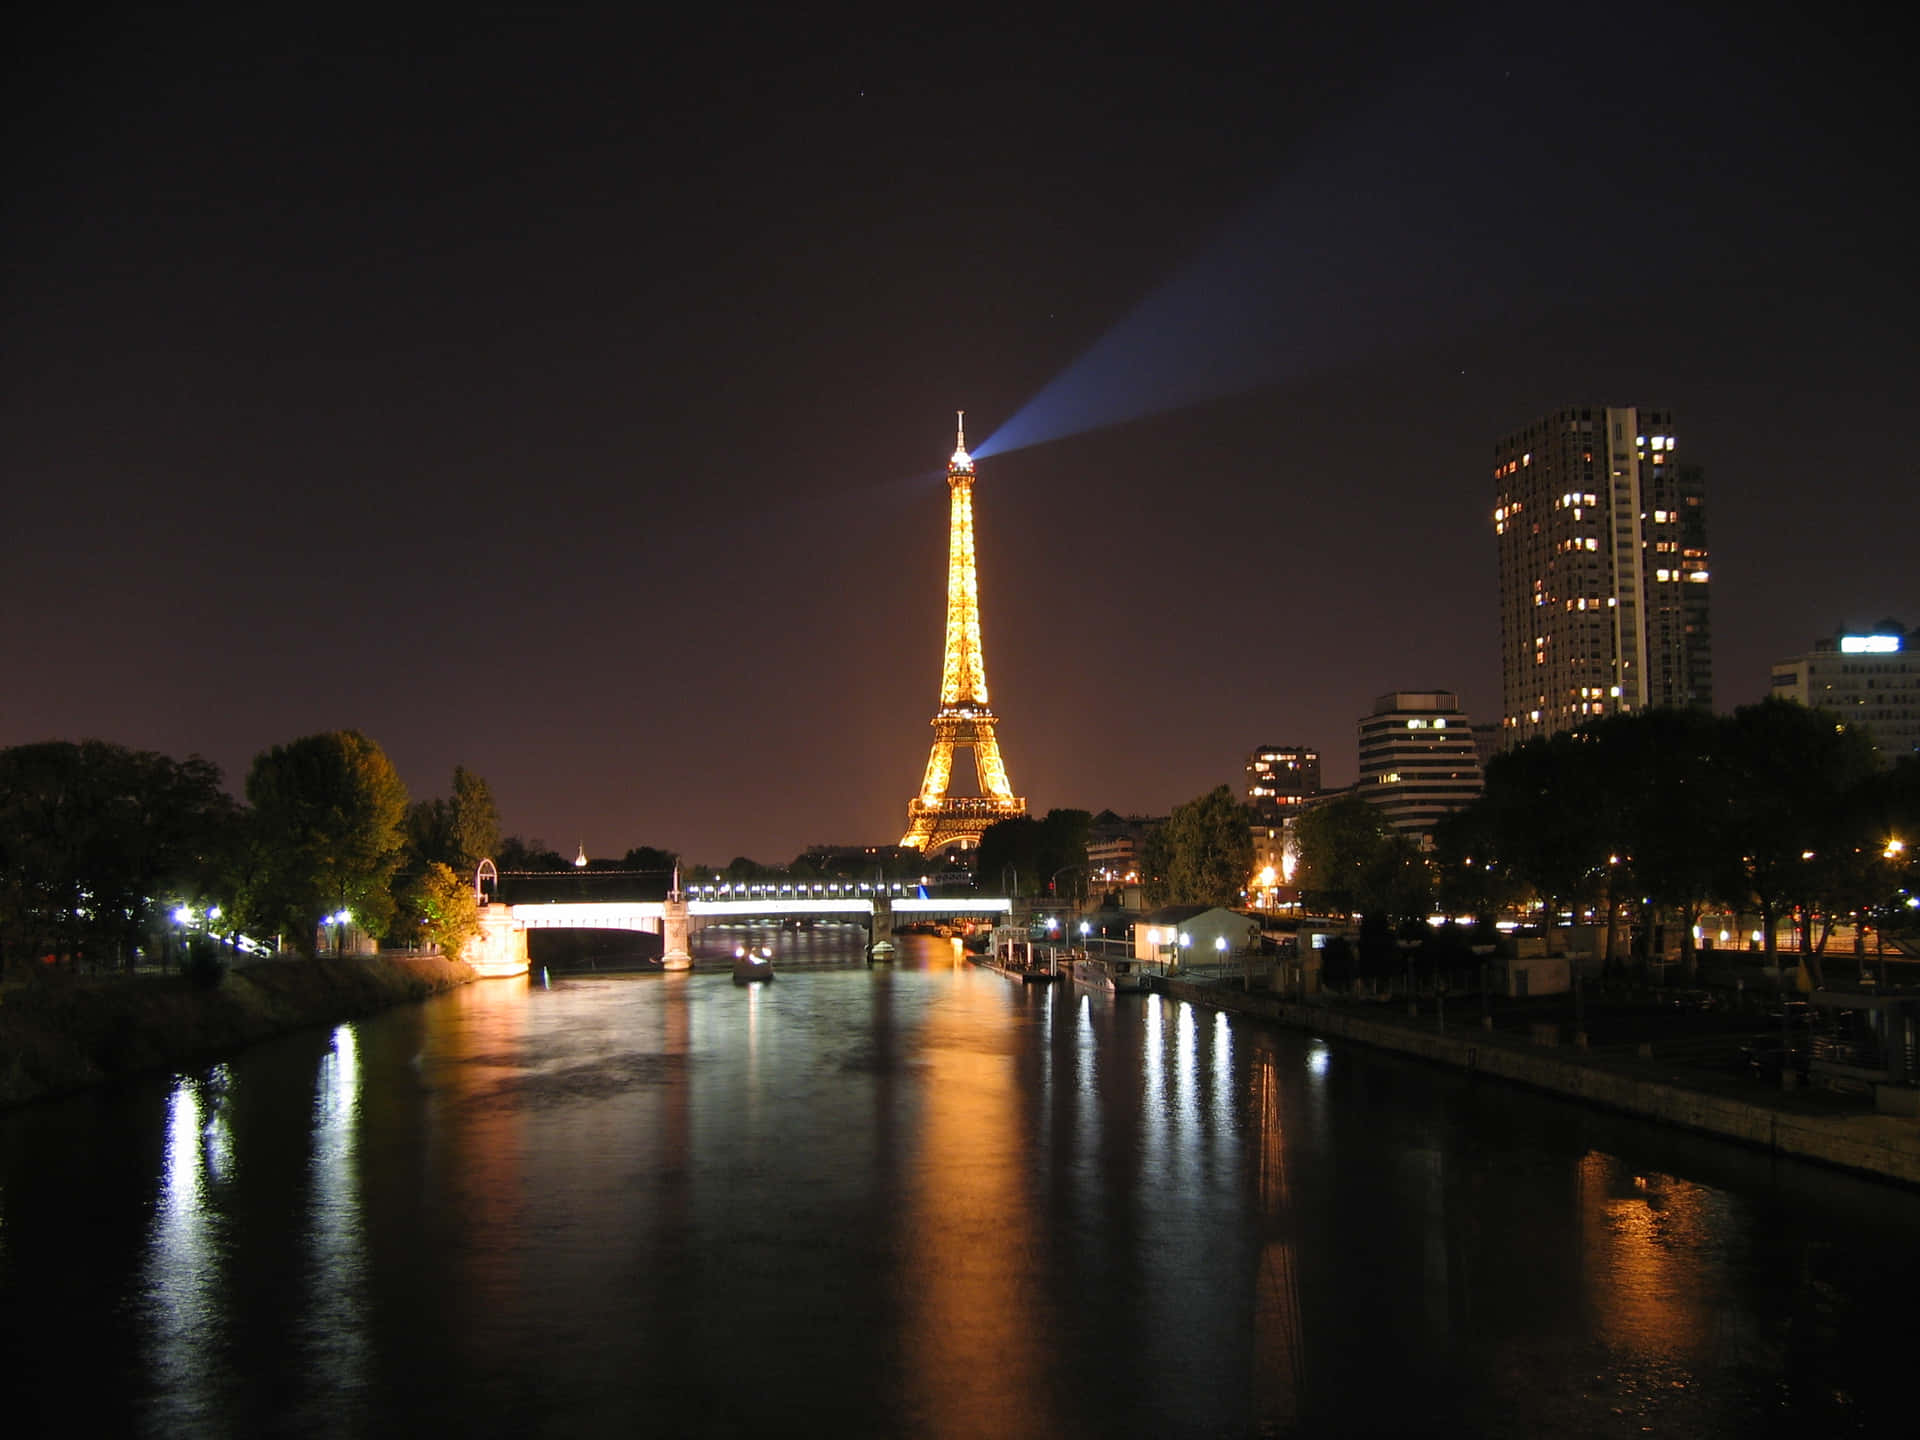 Imagende La Torre Eiffel De Noche En Francia.